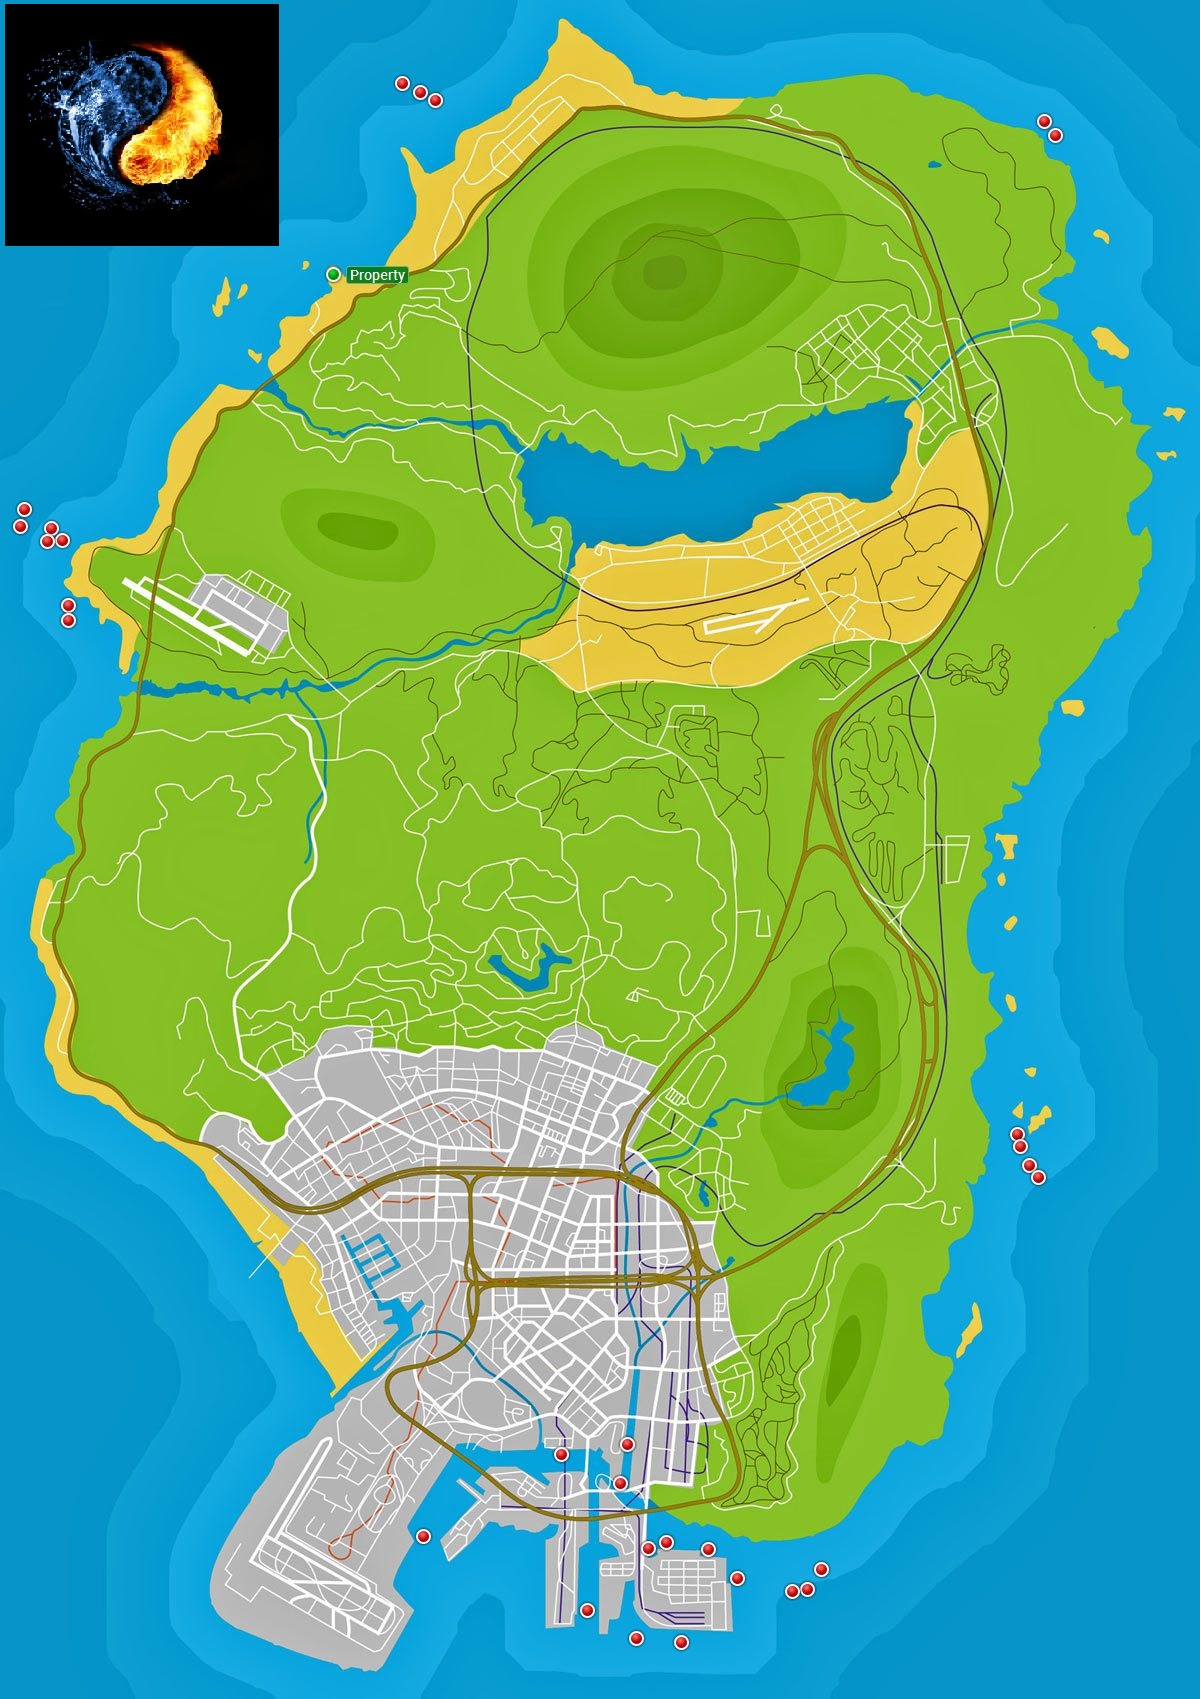 Fã cria mapa interativo de GTA 5 com todos os itens coletáveis do jogo